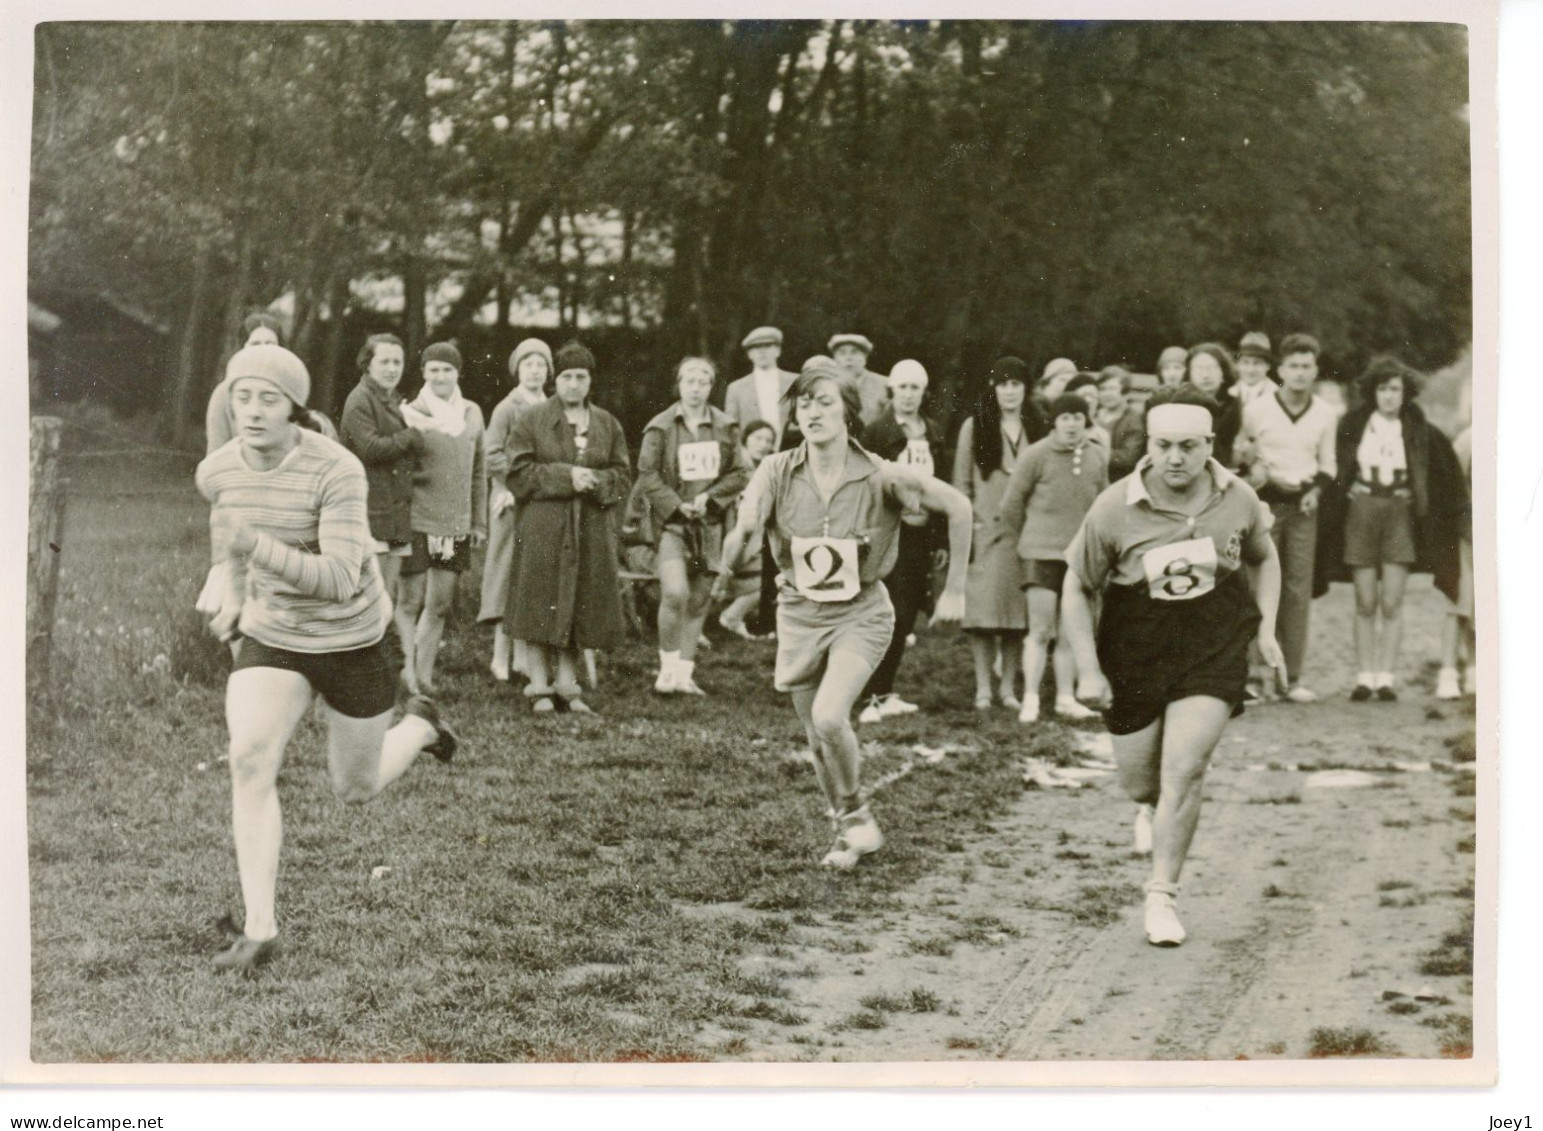 Photo Meurisse Années 1930,3 Athlètes Féminines, Format 13/18 - Deportes